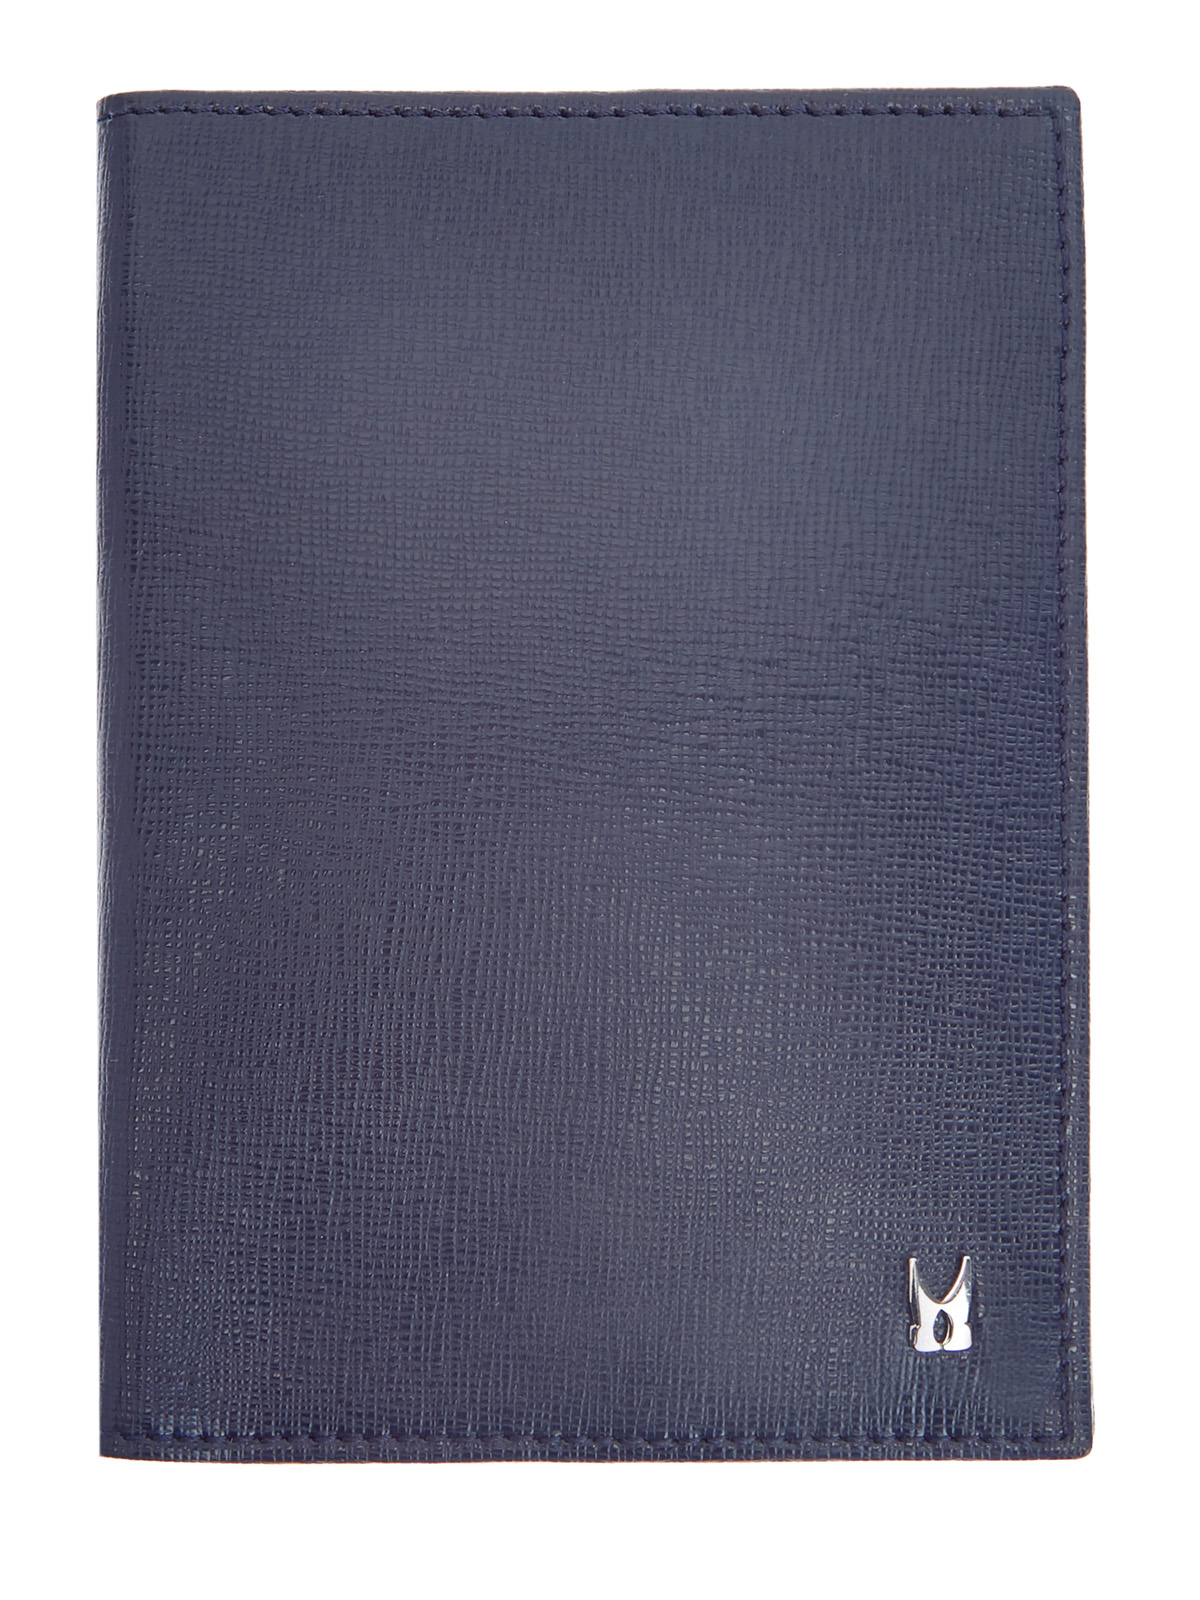 Кожаная обложка для паспорта с литым логотипом MORESCHI, цвет синий, размер 40;41;41.5;43;43.5;44;42 - фото 1